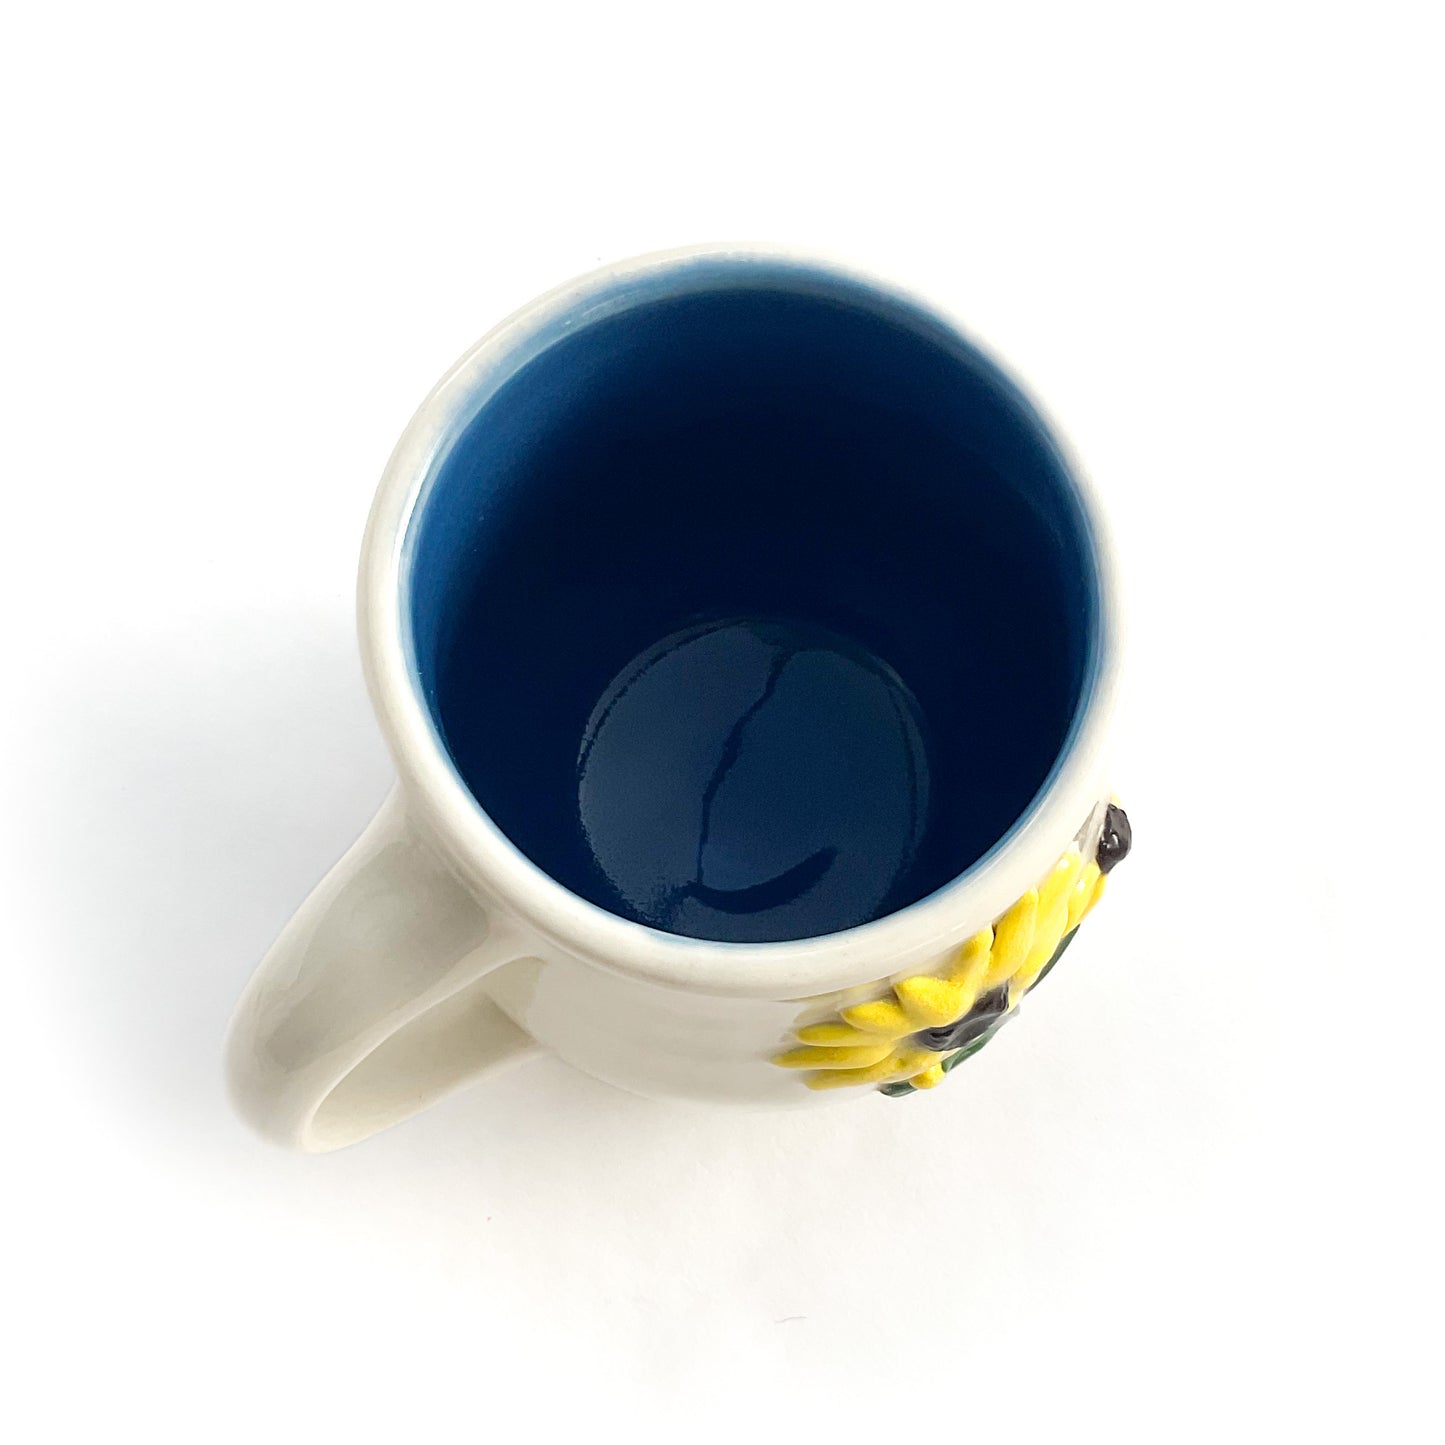 Black Eyed Susan Hand Sculpted Porcelain Mug 10 oz